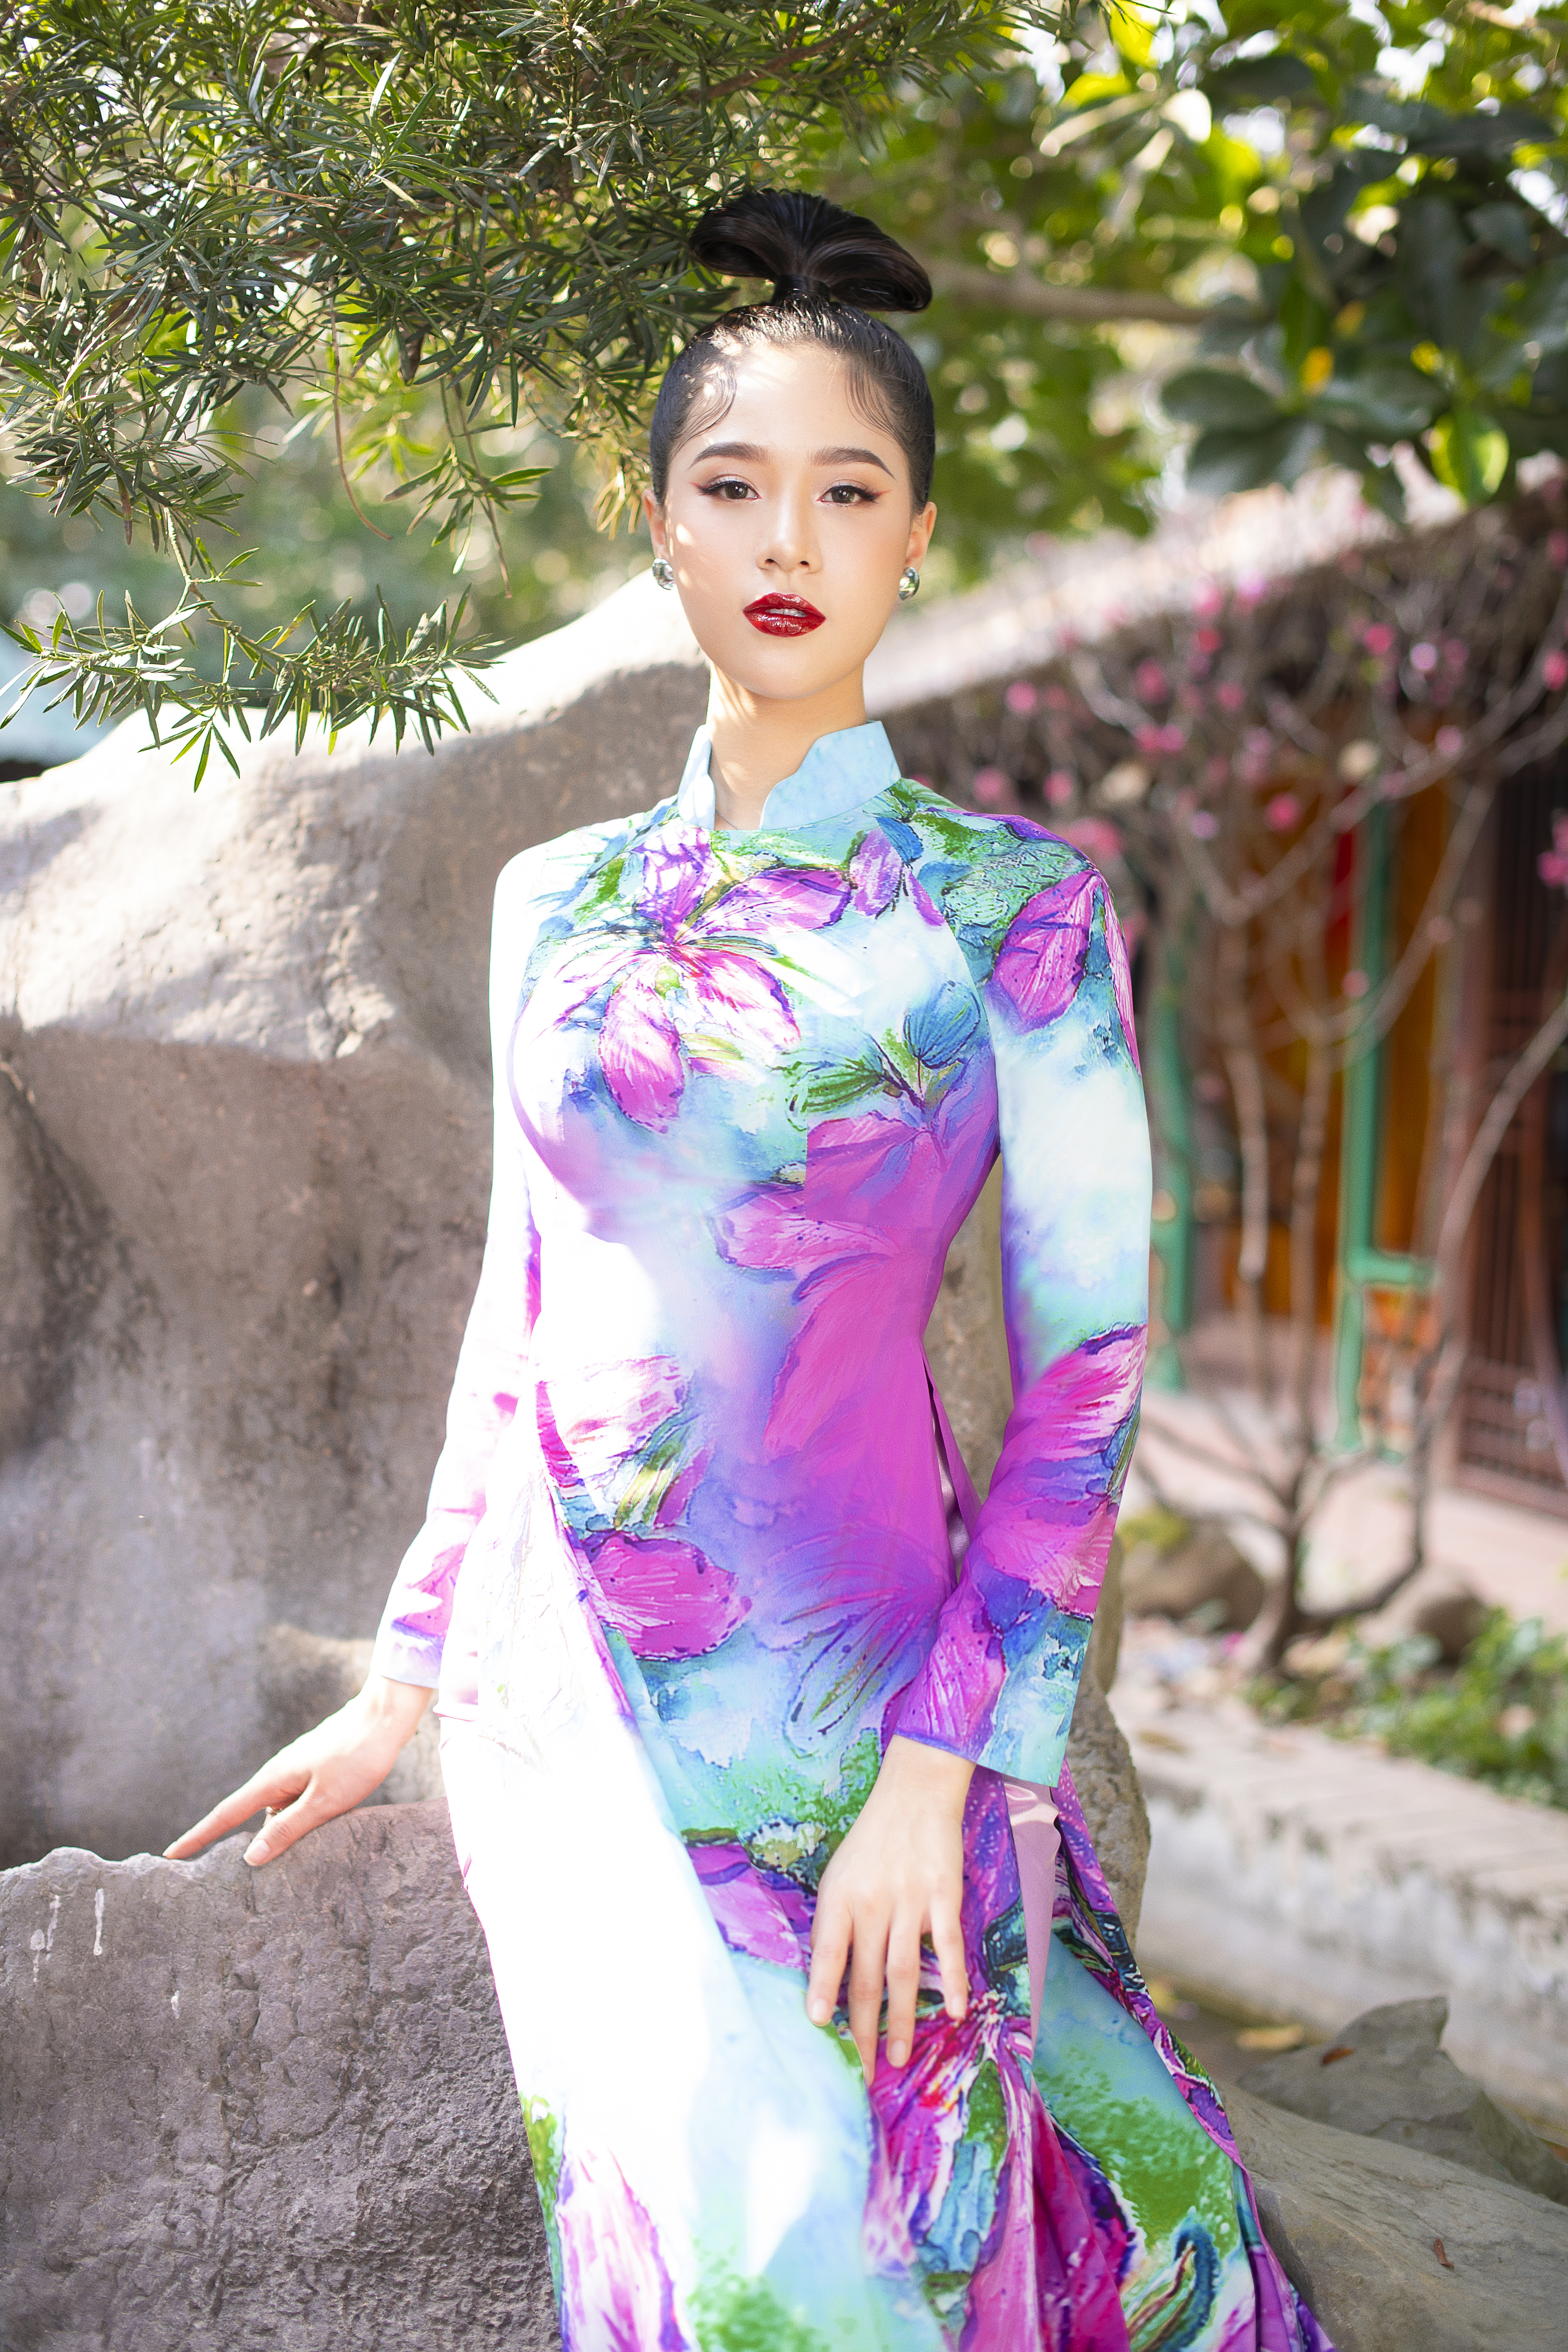 Cách trang điểm, thần thái của Bảo Châu nhận được sự khen ngợi sau 3 năm bước ra từ cuộc thi Hoa hậu Việt Nam